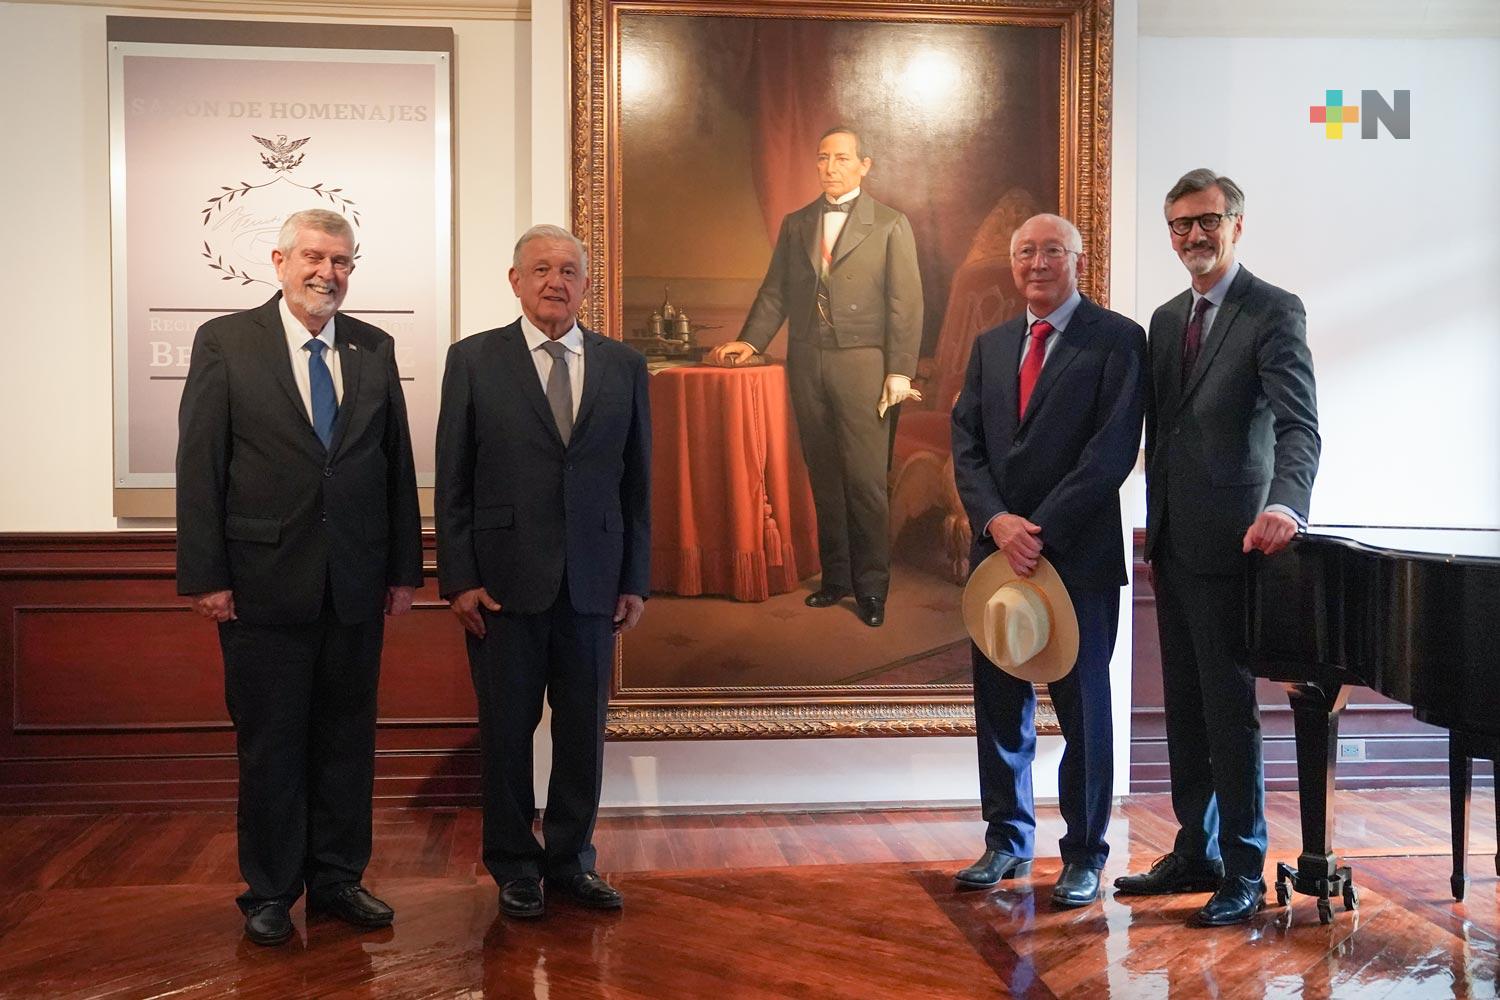 Presidente López Obrador conmemora 150 aniversario luctuoso de Benito Juárez